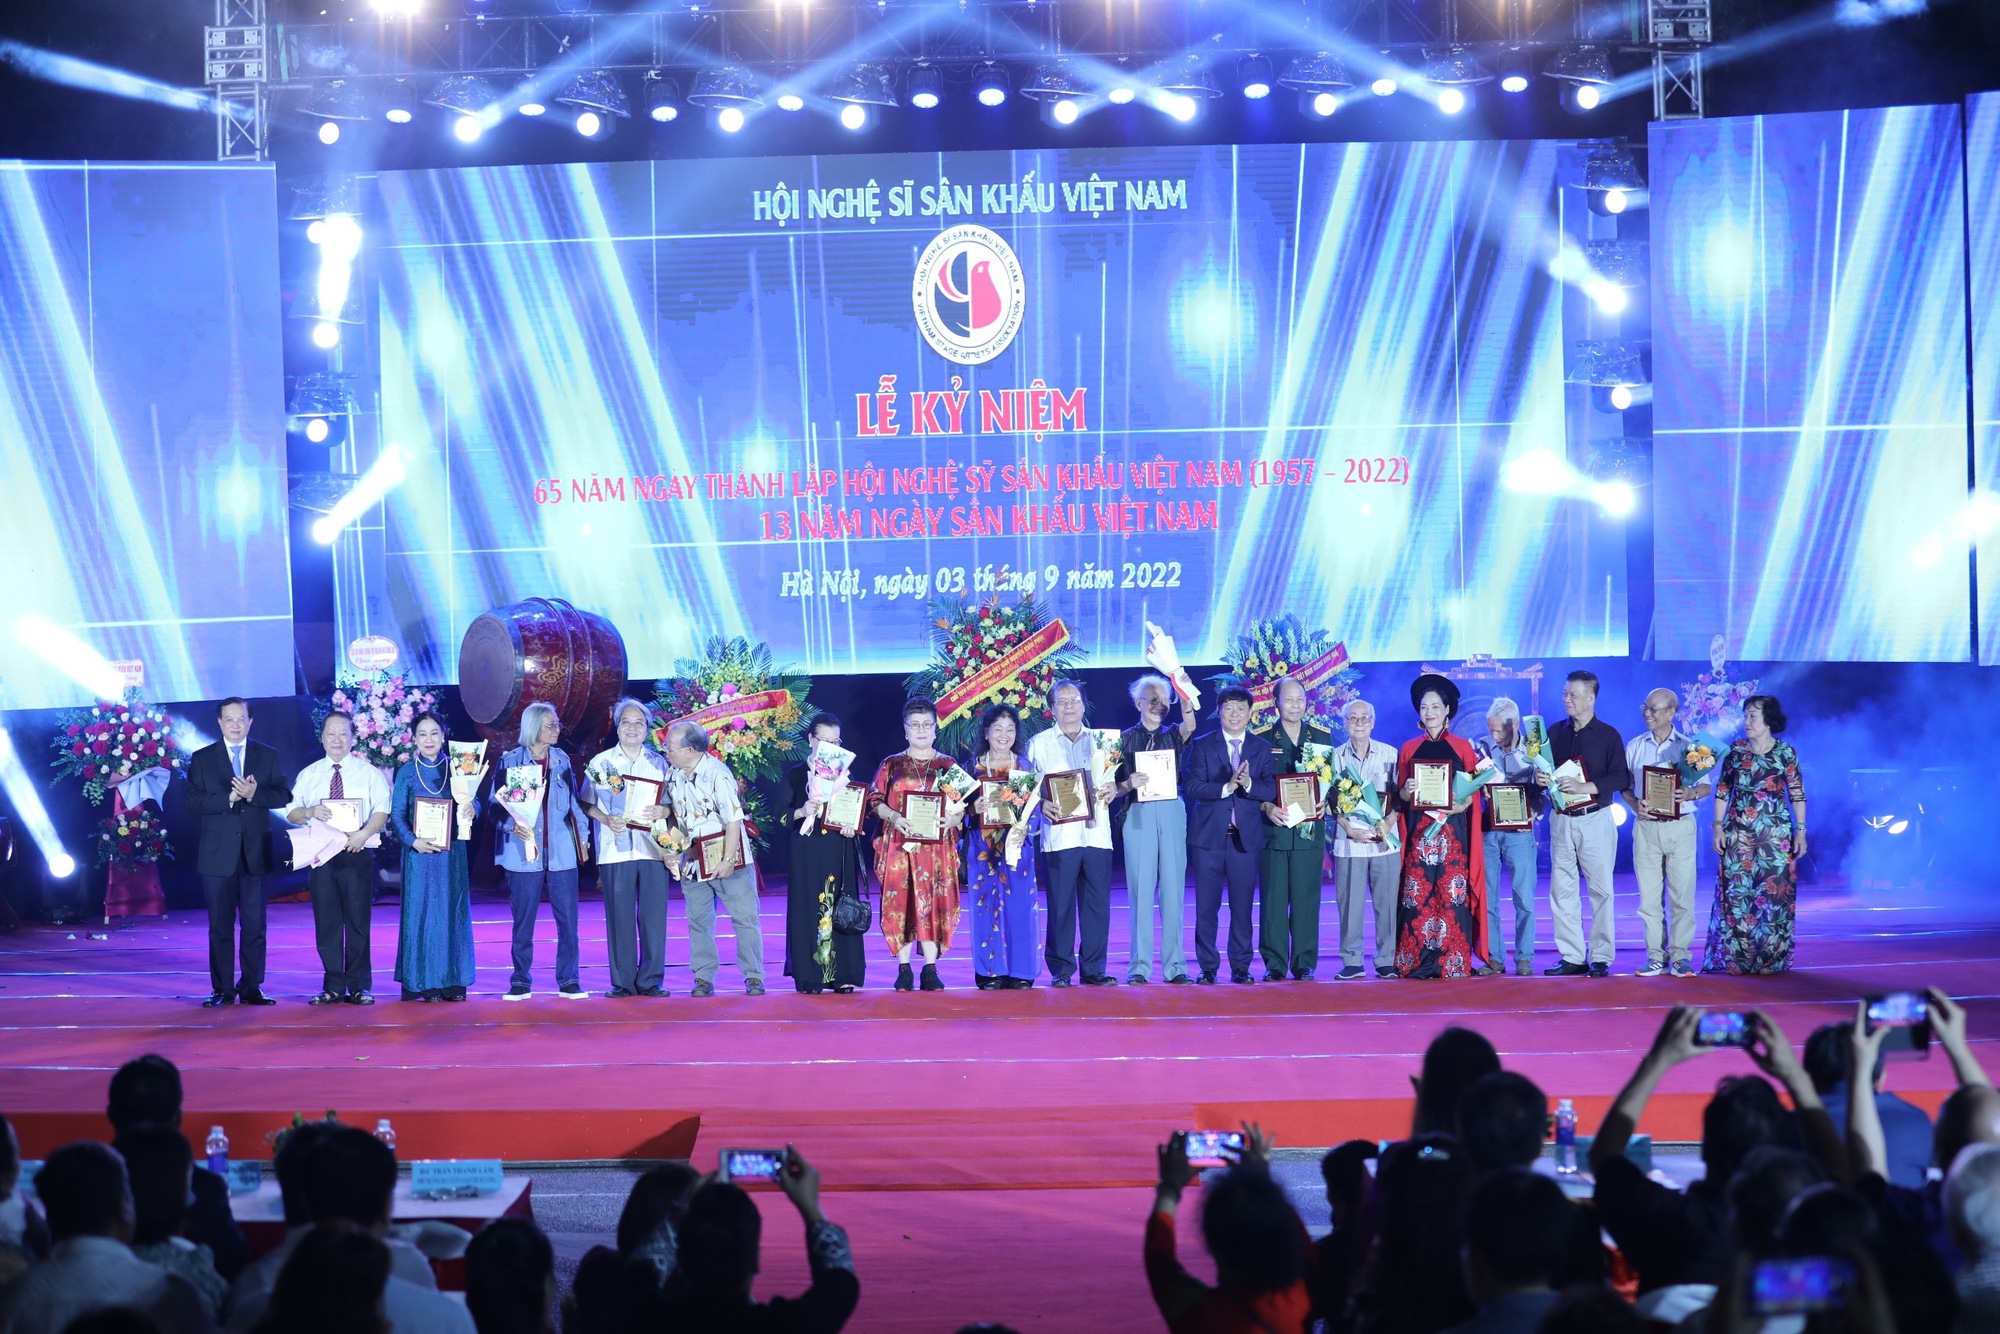 Tưng bừng kỷ niệm 65 năm thành lập Hội nghệ sỹ sân khấu Việt Nam - Ảnh 3.